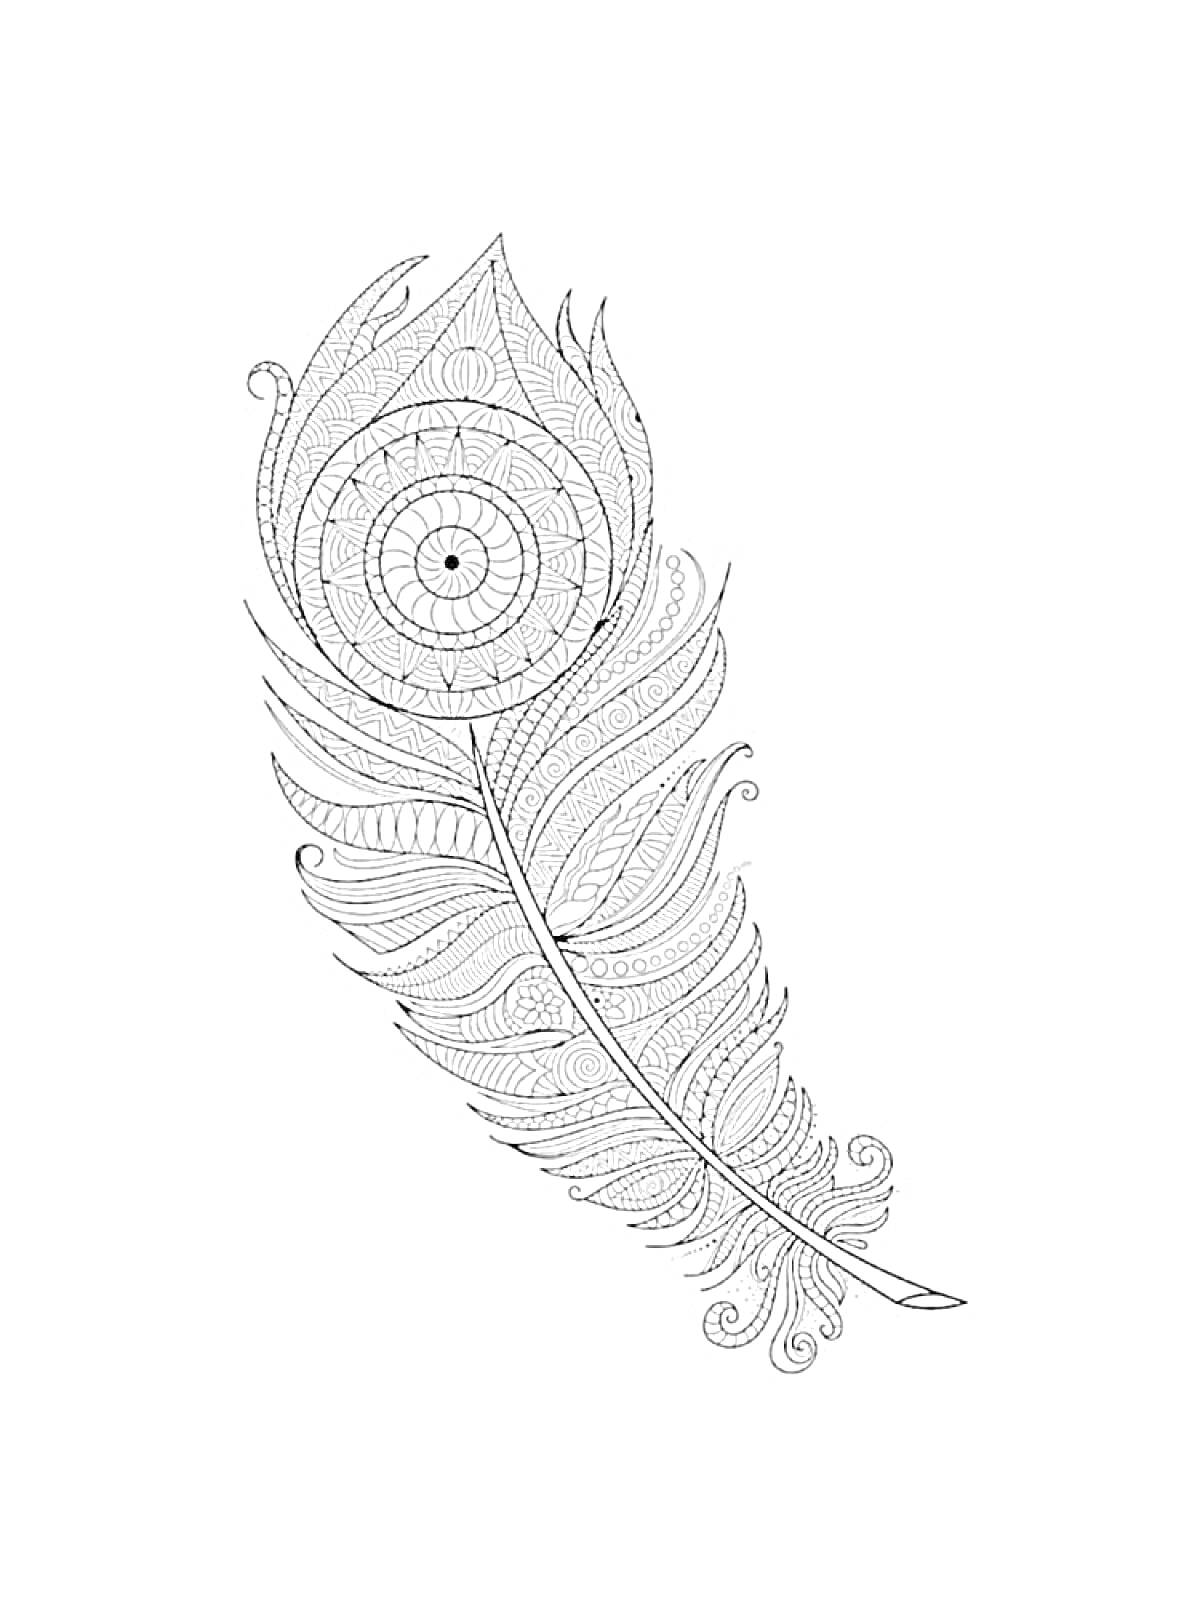 Раскраска Перо с декоративным узором в виде мандалы, спиральных и волнистых линий